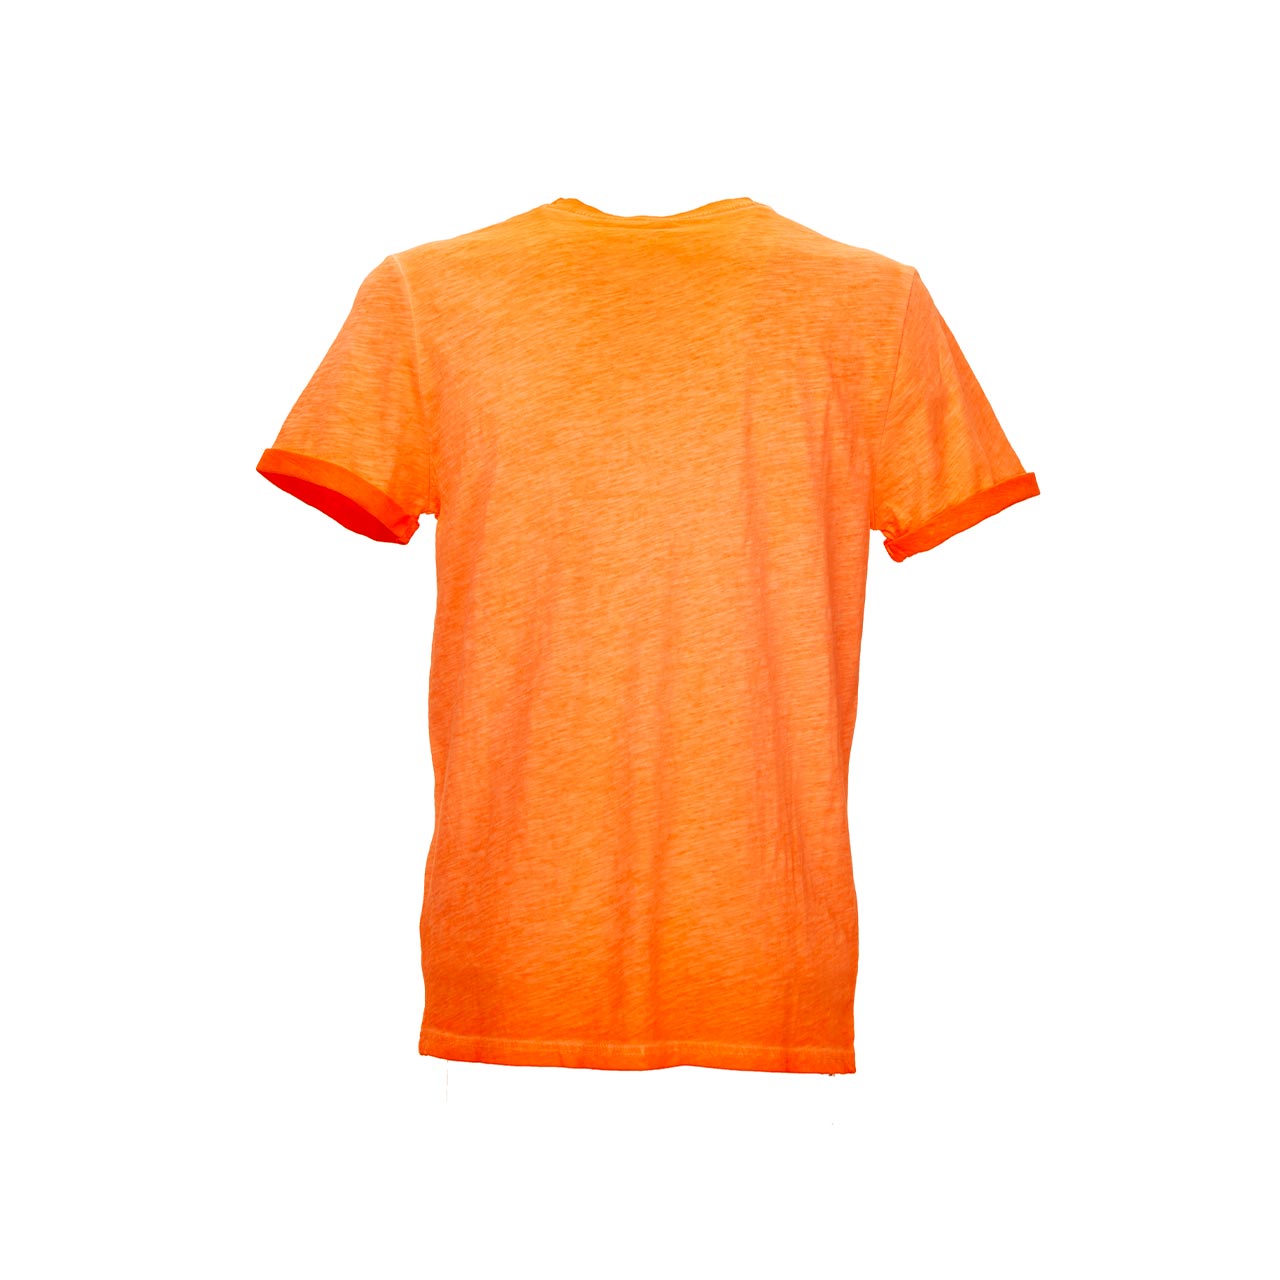 Tshirt da lavoro upower modello fluo colore orange fluo